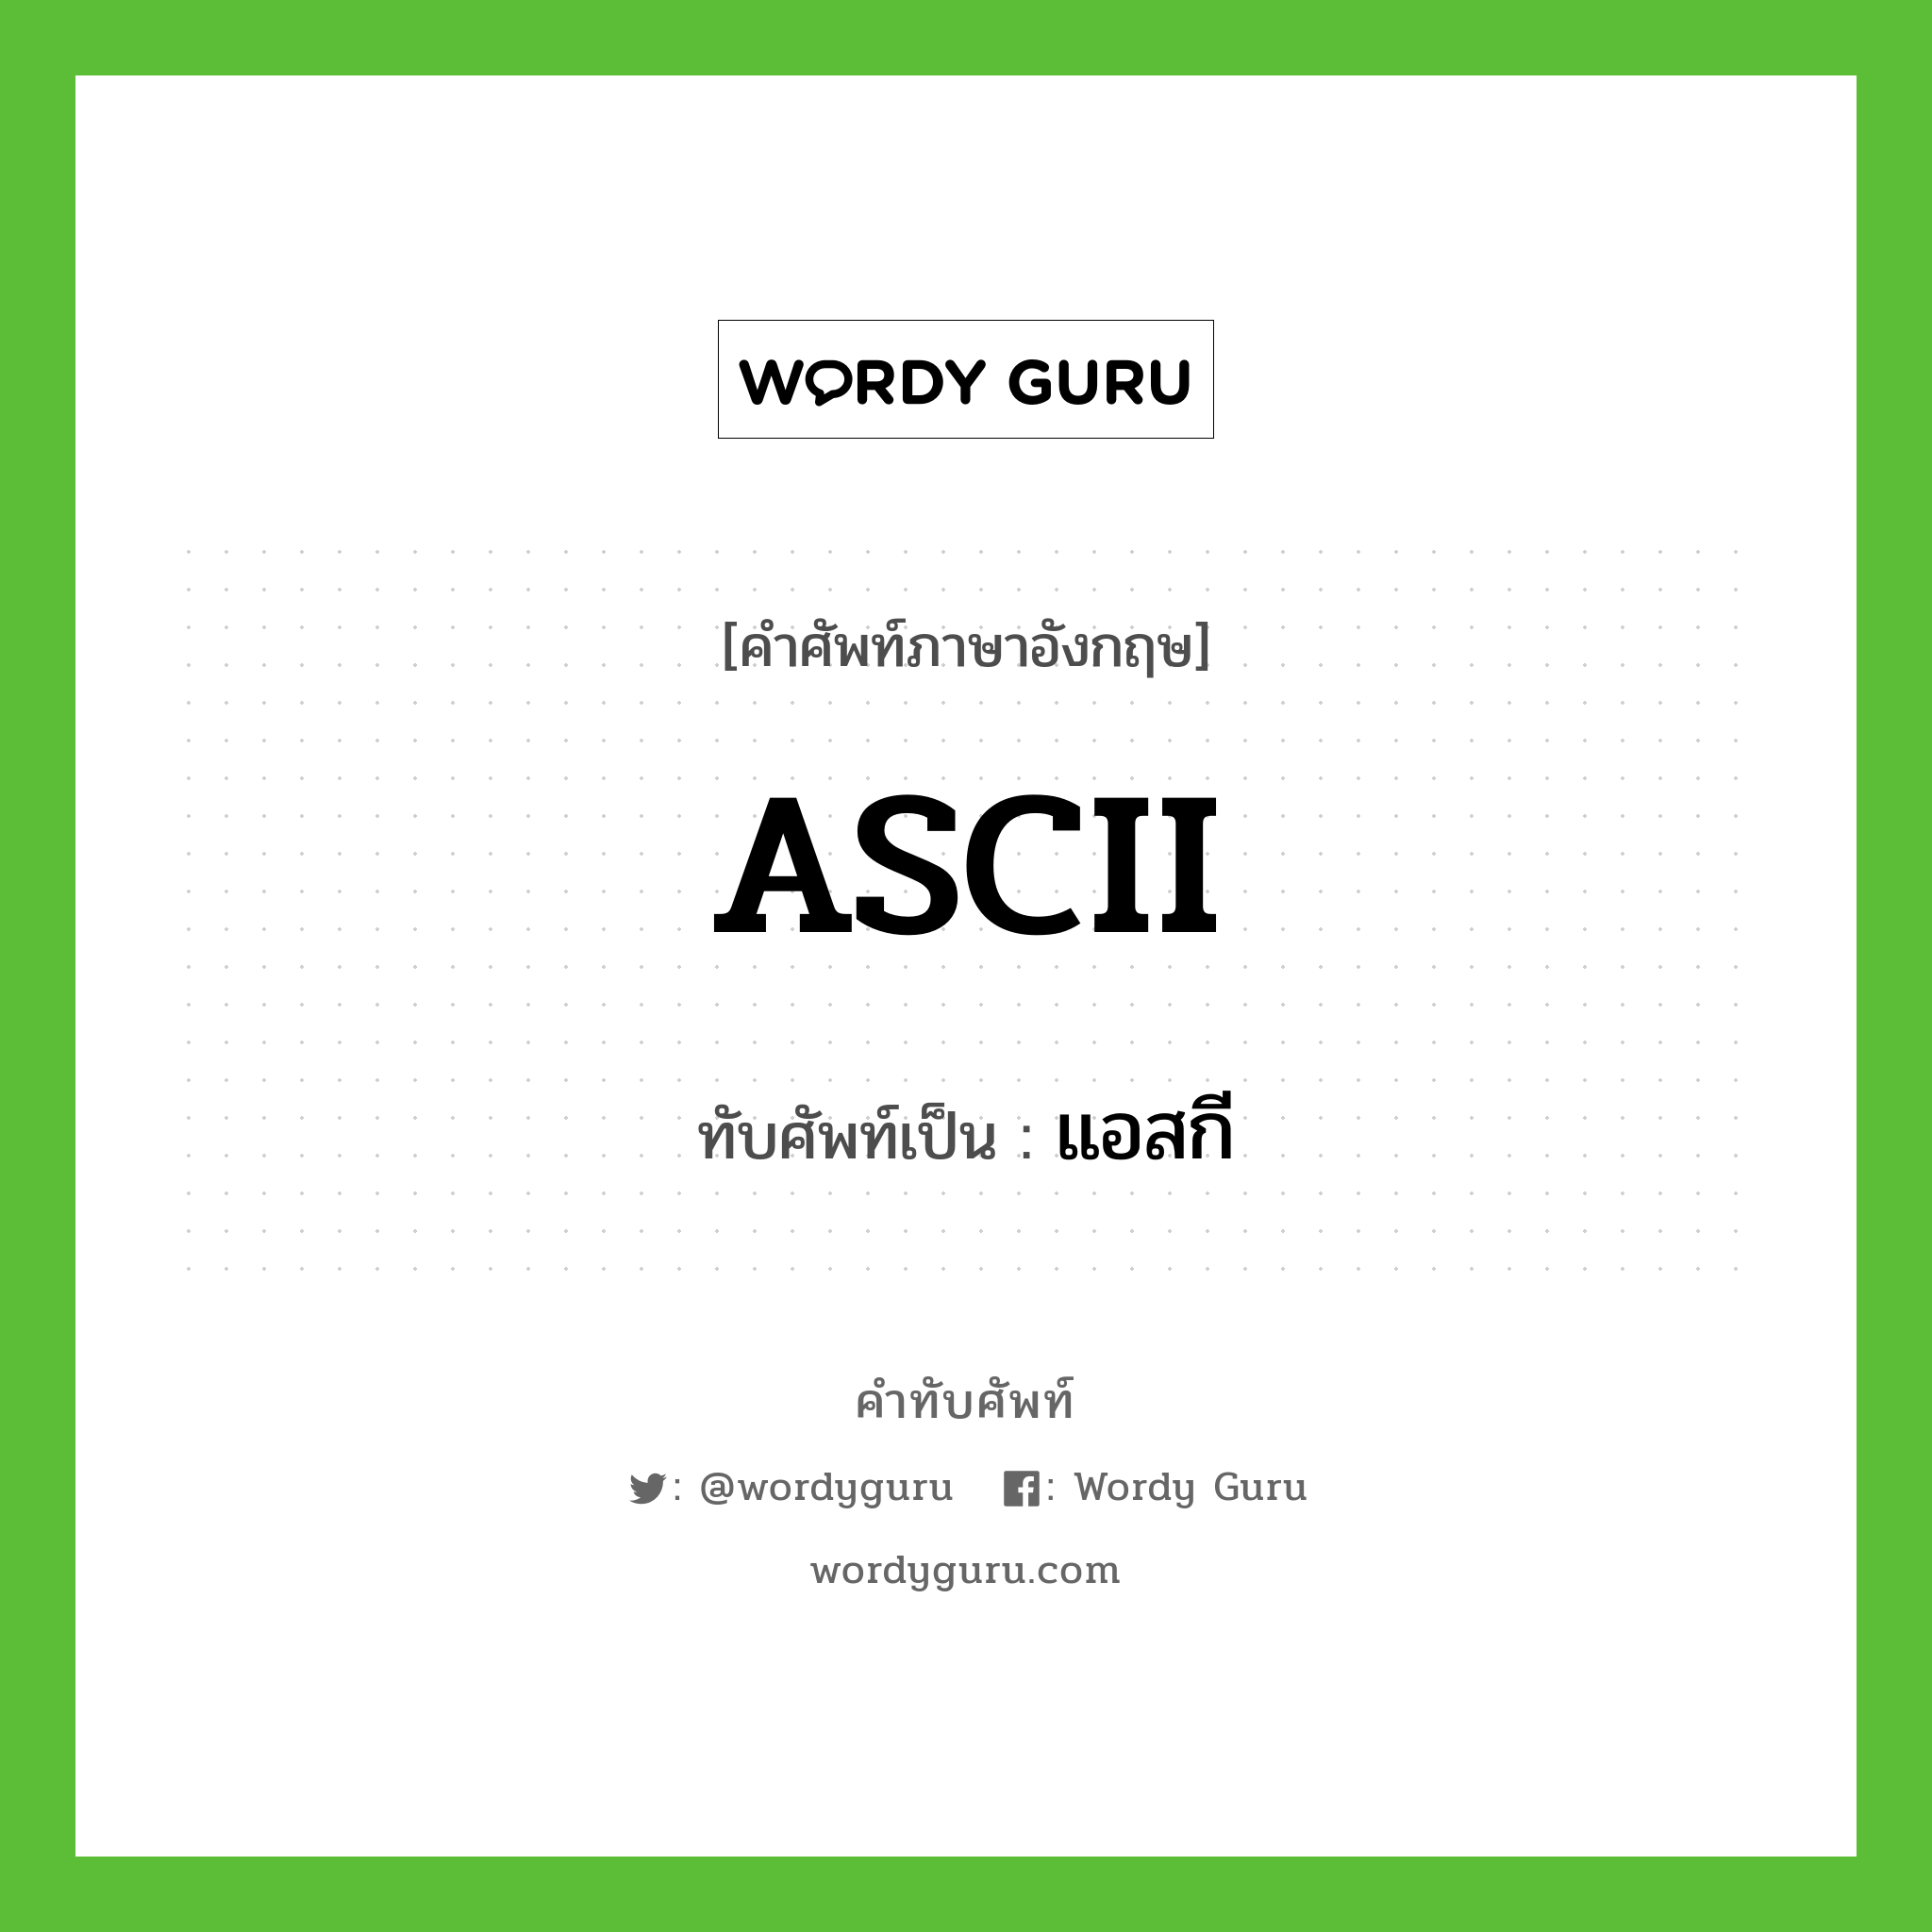 ASCII เขียนเป็นคำไทยว่าอะไร?, คำศัพท์ภาษาอังกฤษ ASCII ทับศัพท์เป็น แอสกี